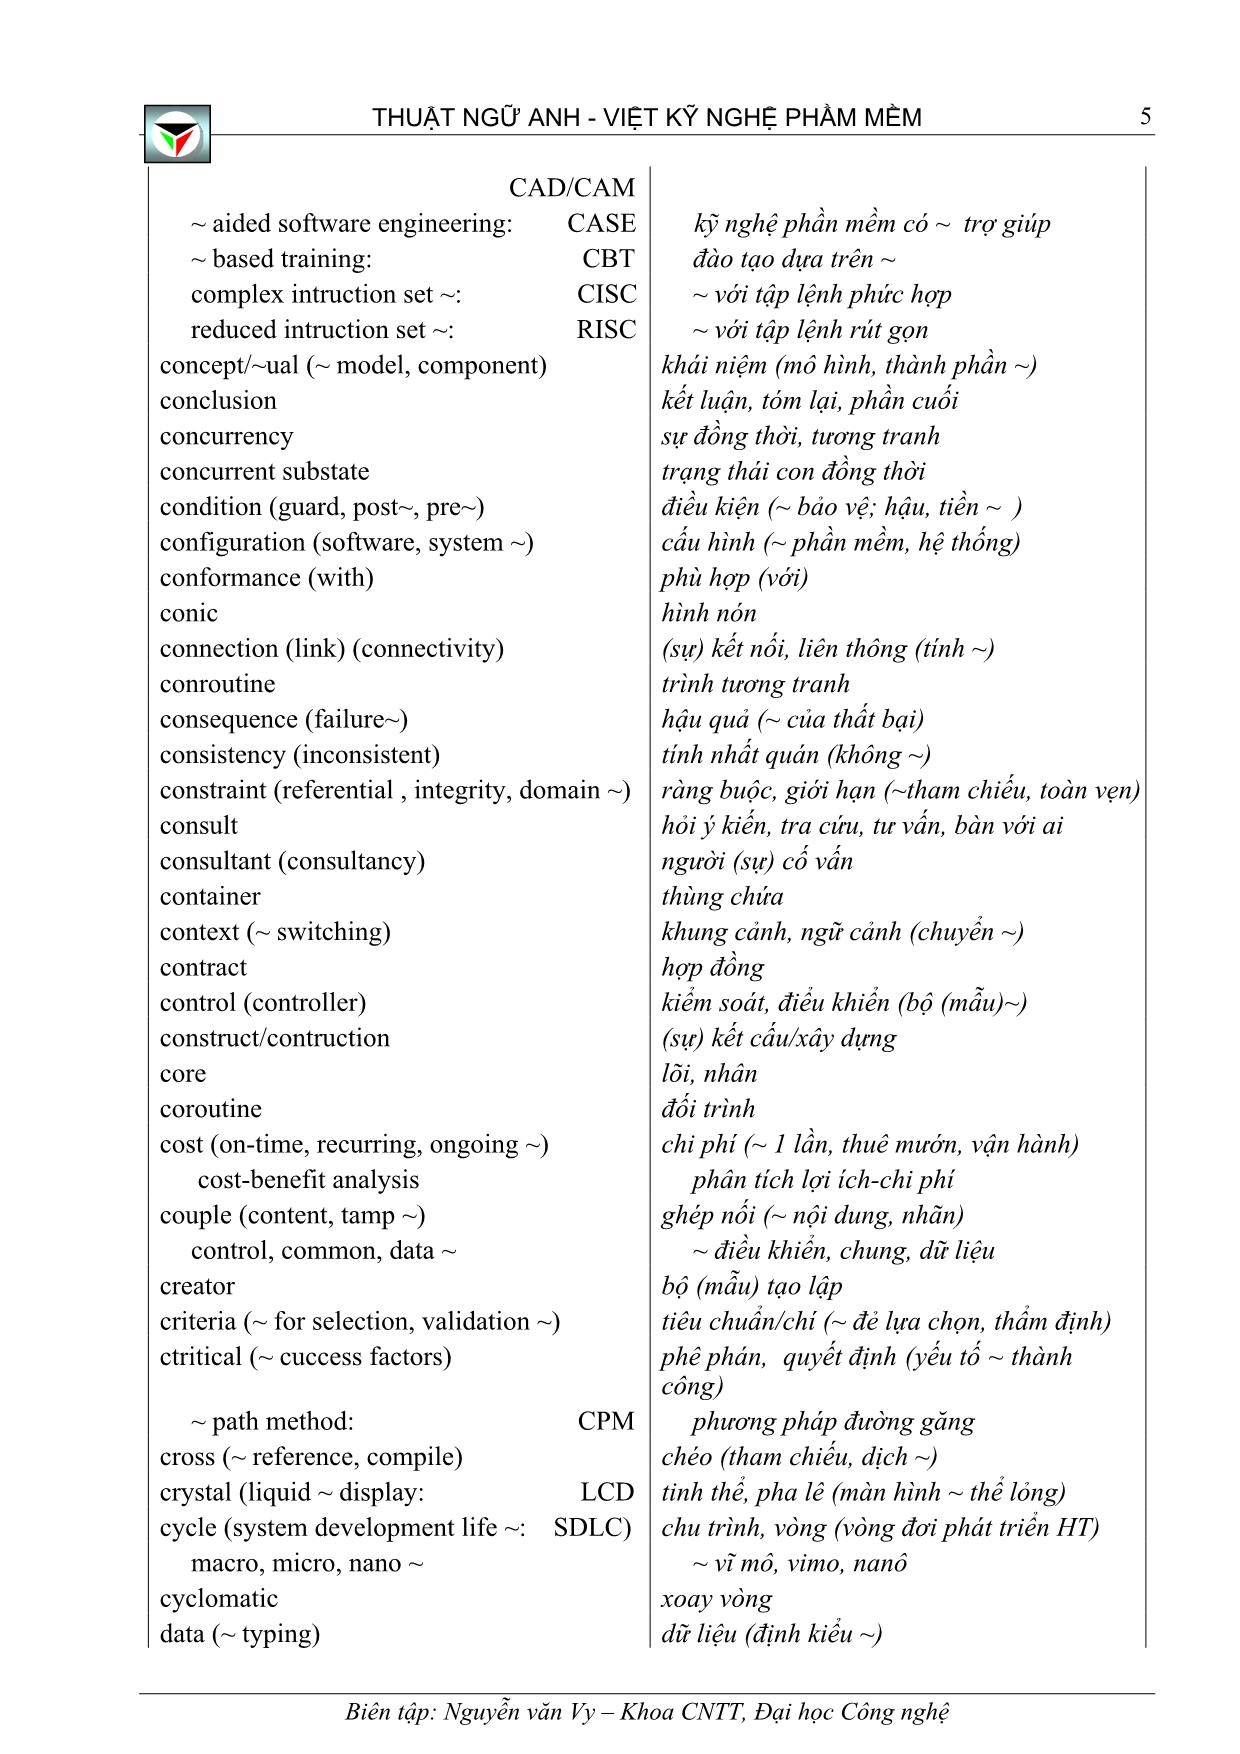 Thuật ngữ Anh - Việt kỹ nghệ phầm mềm trang 5